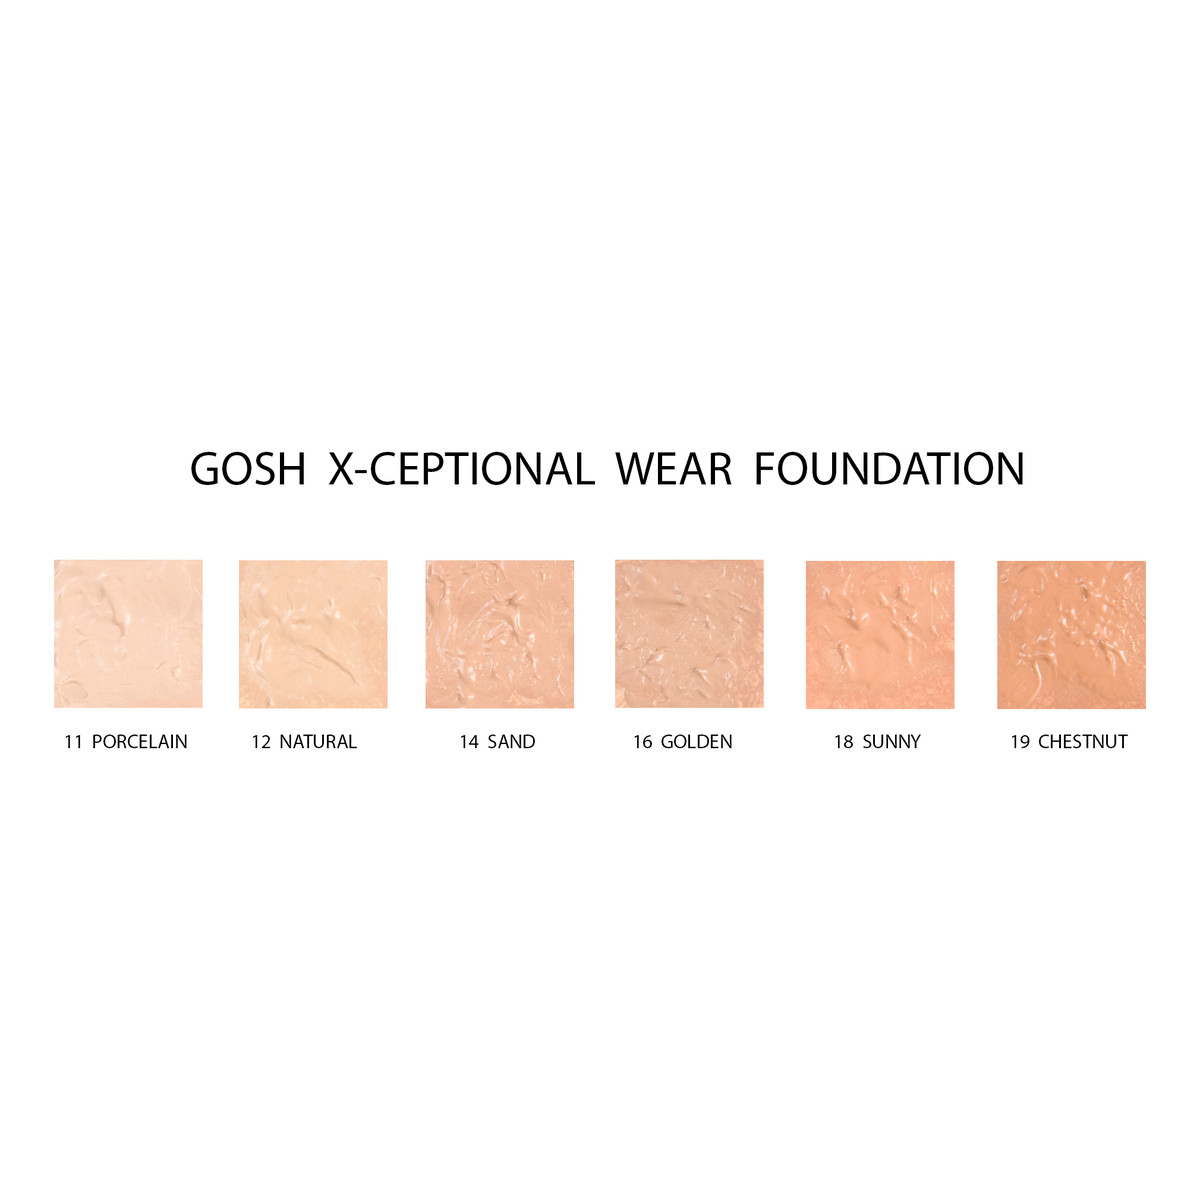 Gosh X-Ceptional Wear Foundation kryjący Podkład do twarzy Chestnut (19) 35ml